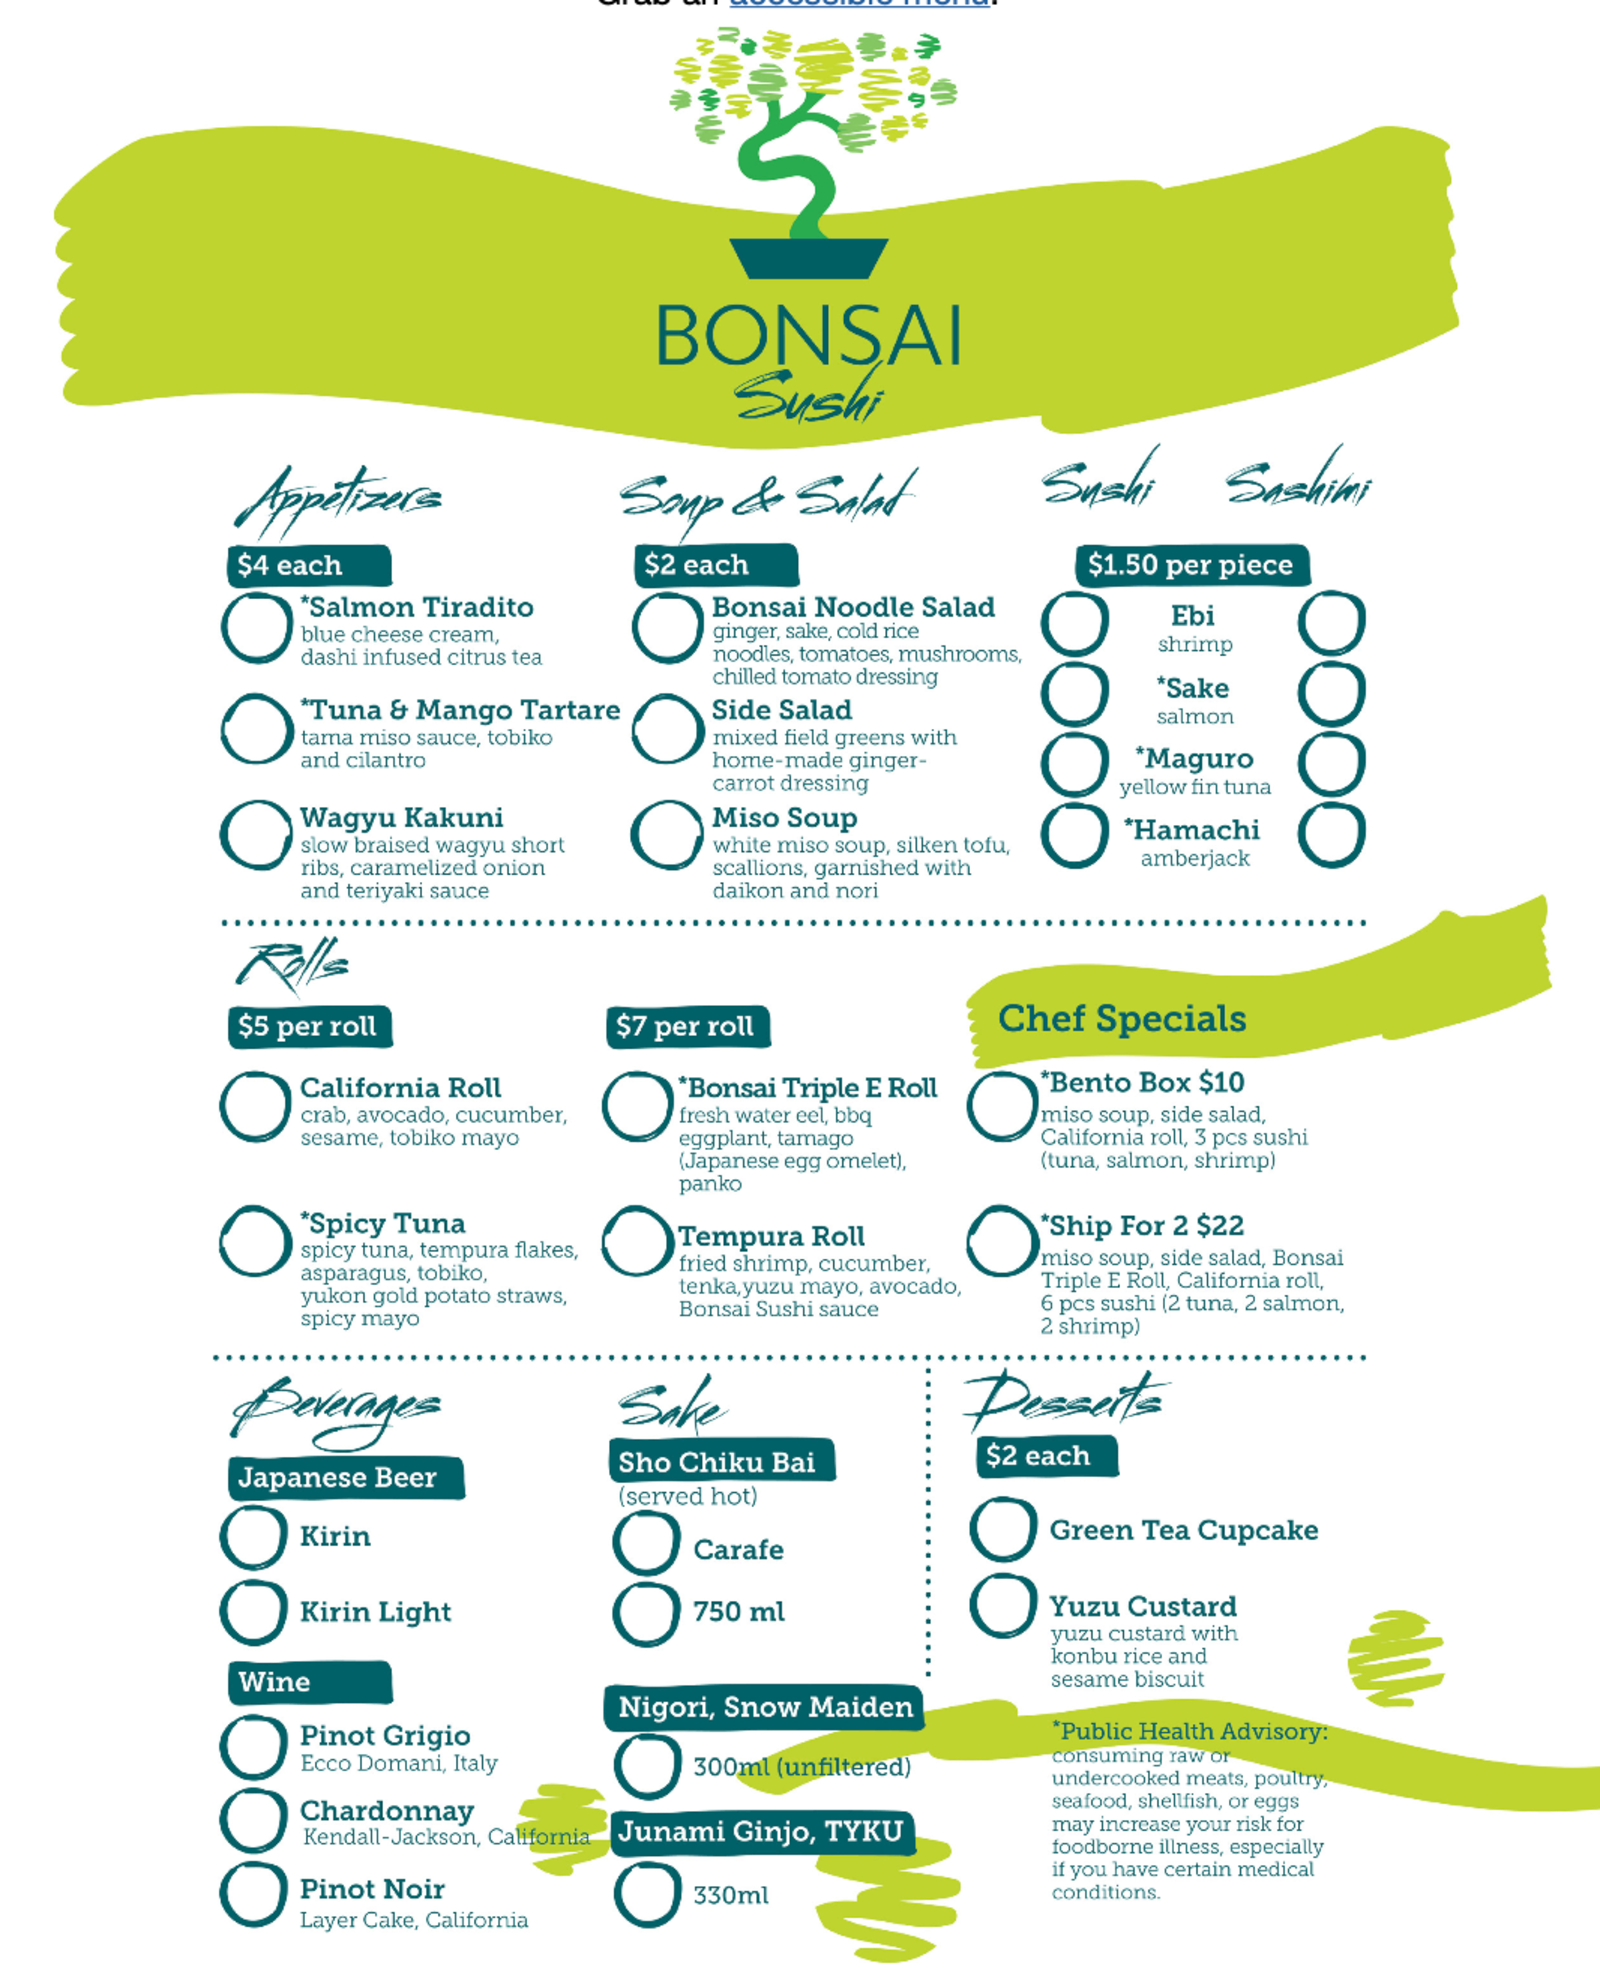 Bonsai sushi menu